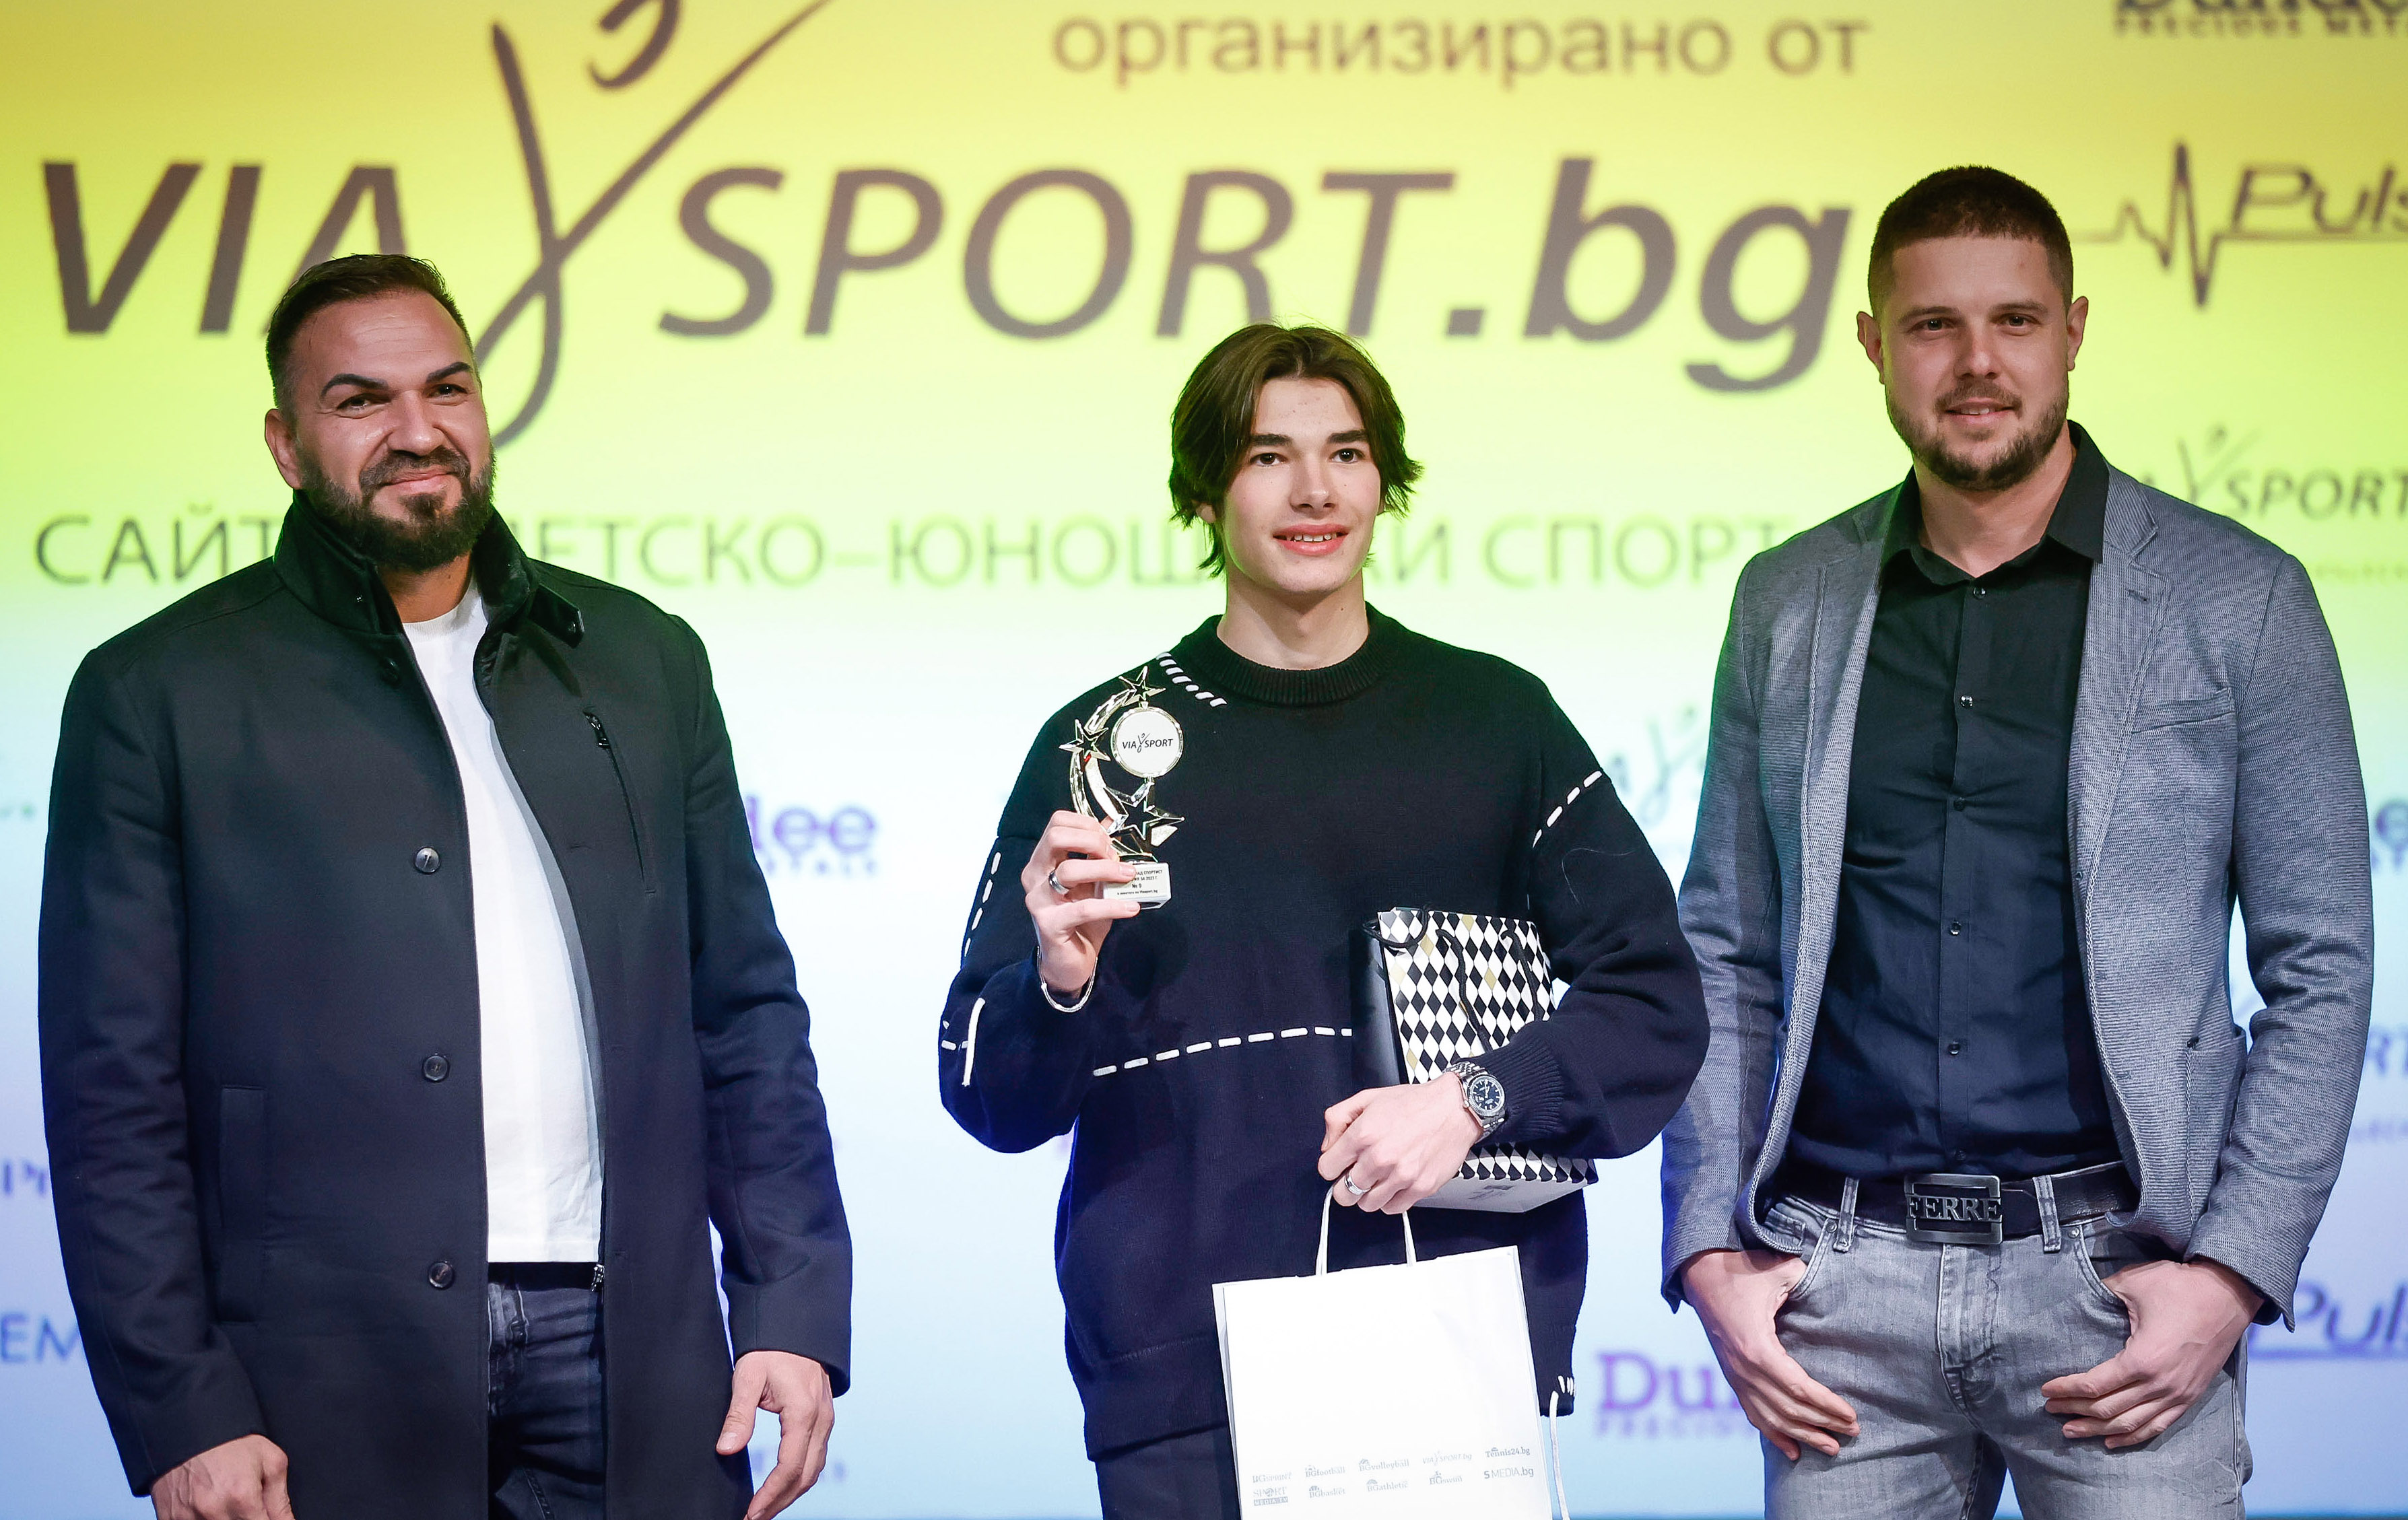 Петър Мицин Най добър млад спортист церемония награждаване